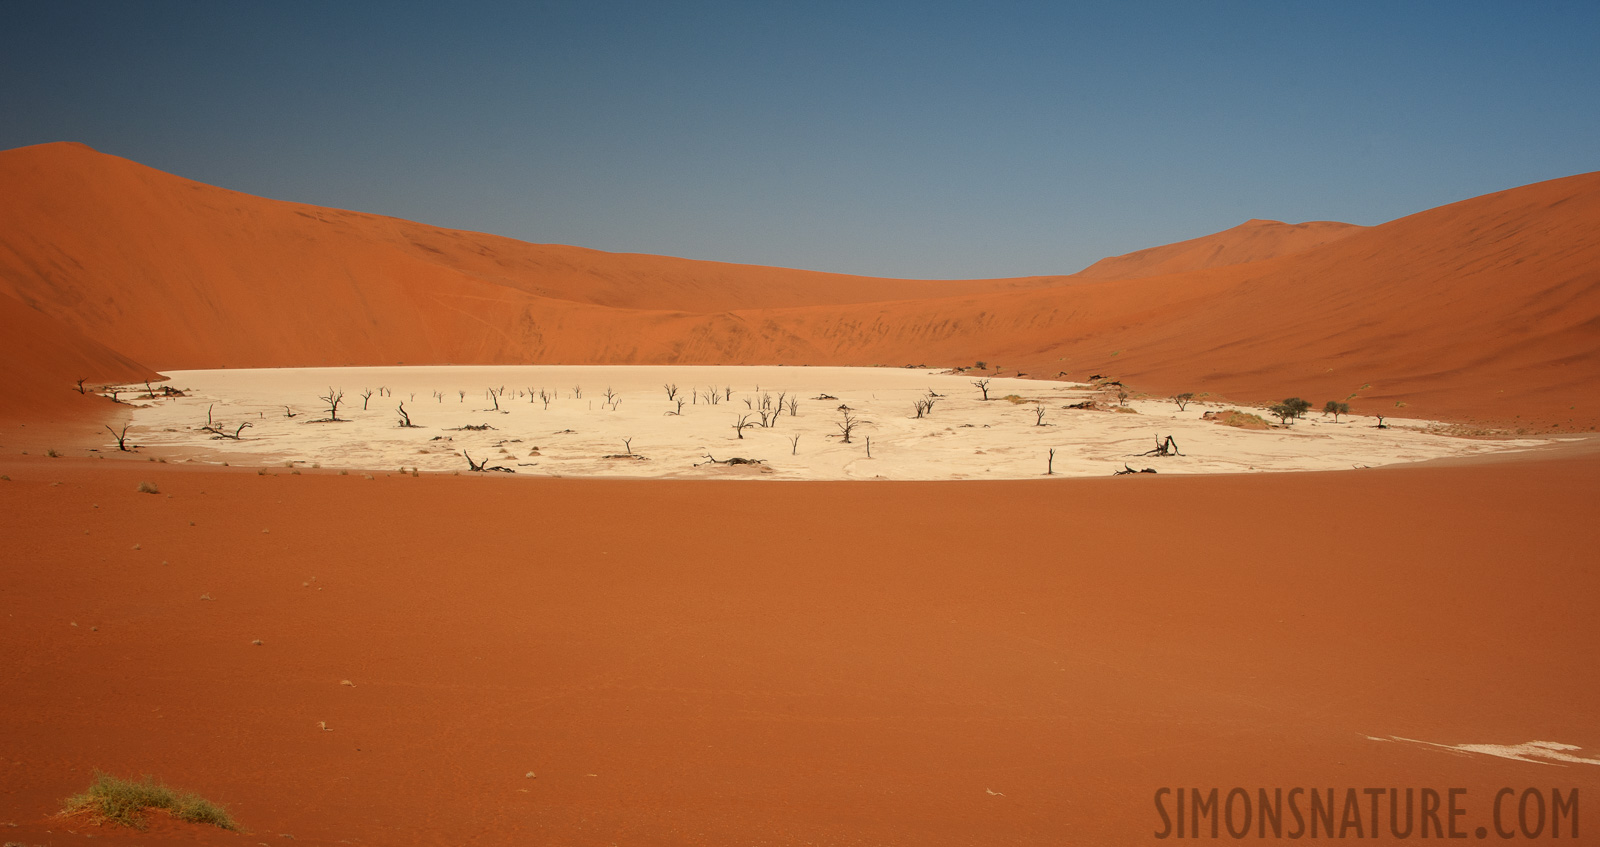 Namib-Naukluft National Park [32 mm, 1/200 sec at f / 16, ISO 400]